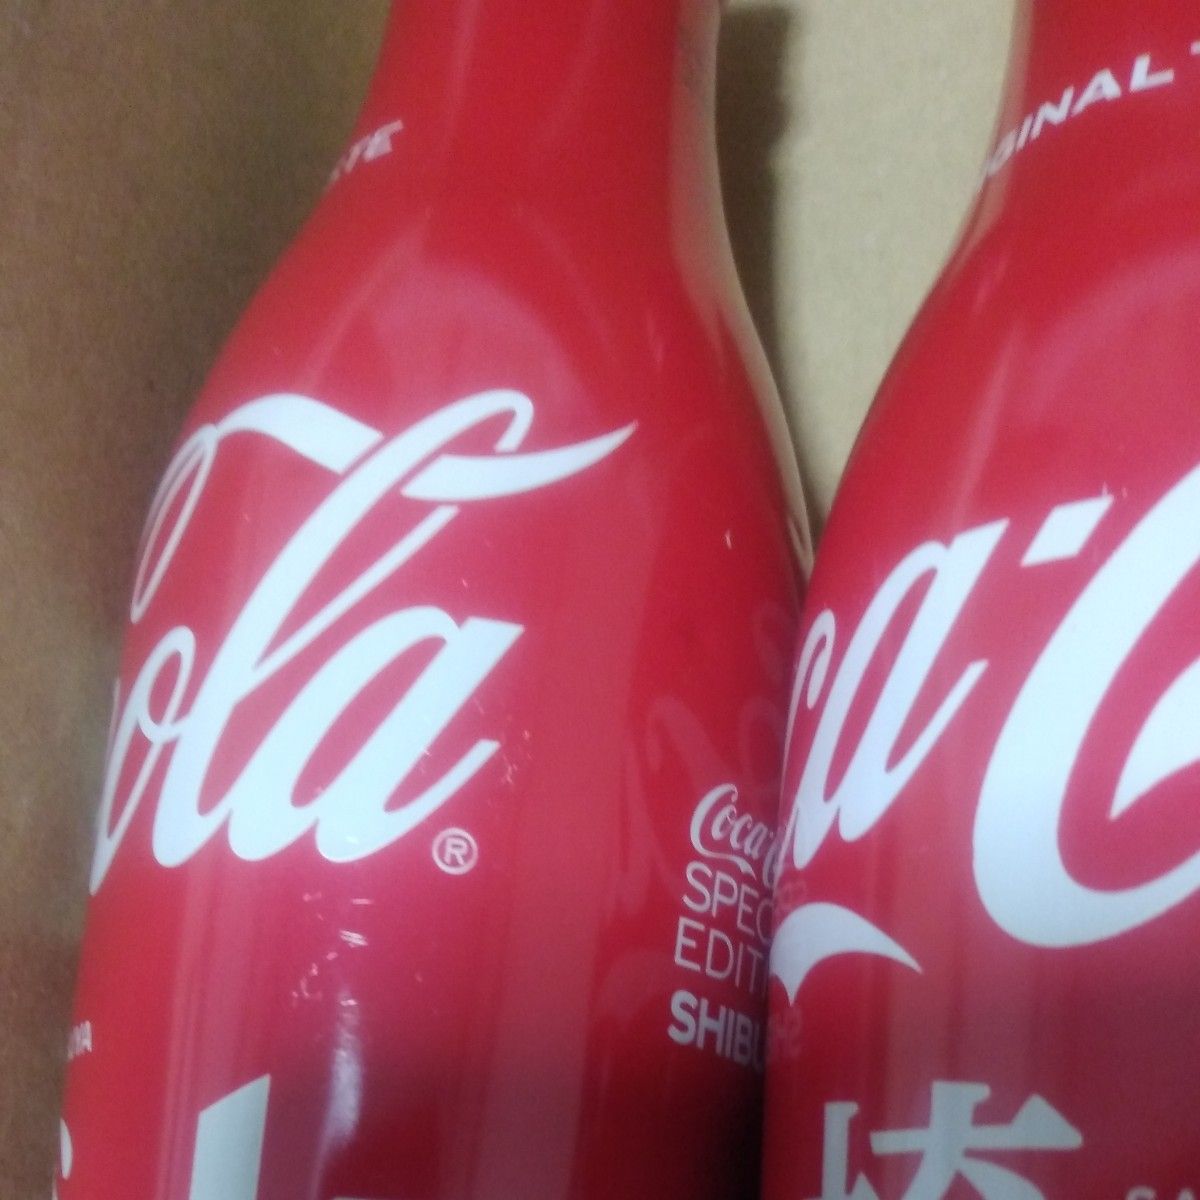 【中身なし】コカ・コーラ スリムボトル ボトル缶 250ml 埼玉・渋谷